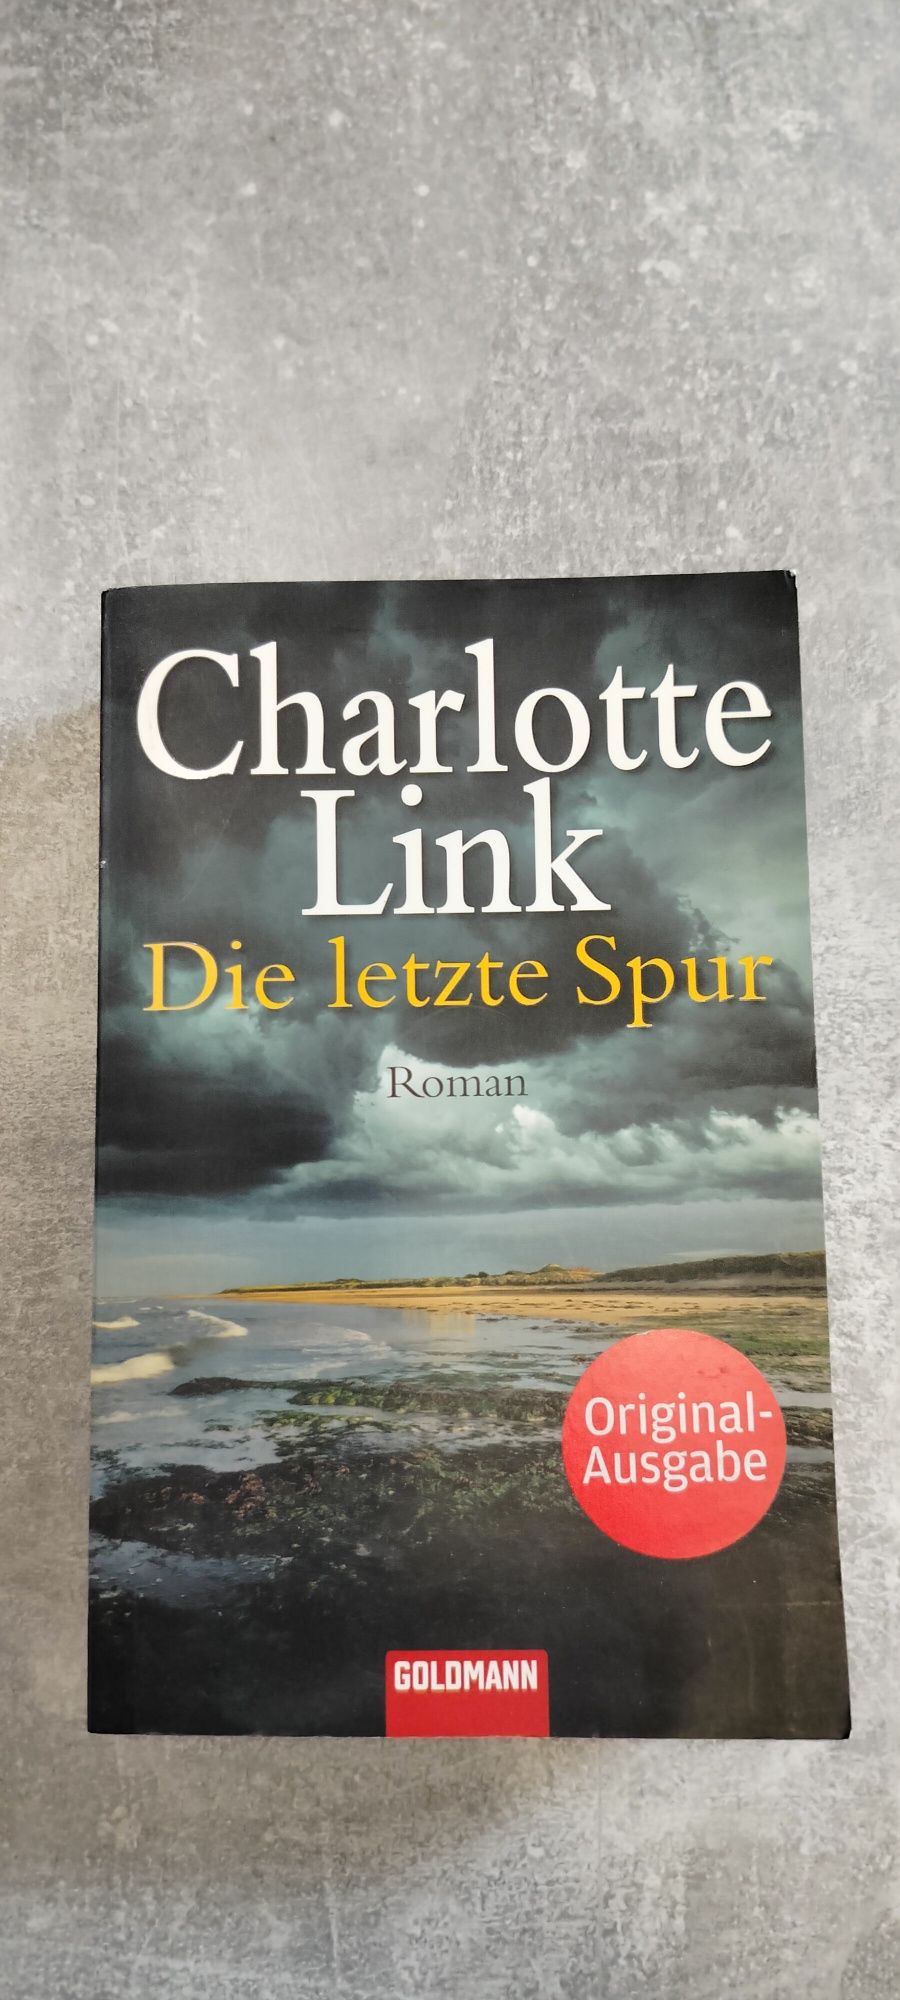 Książka po niemiecku Charlotte Link "Die letzte Spur"